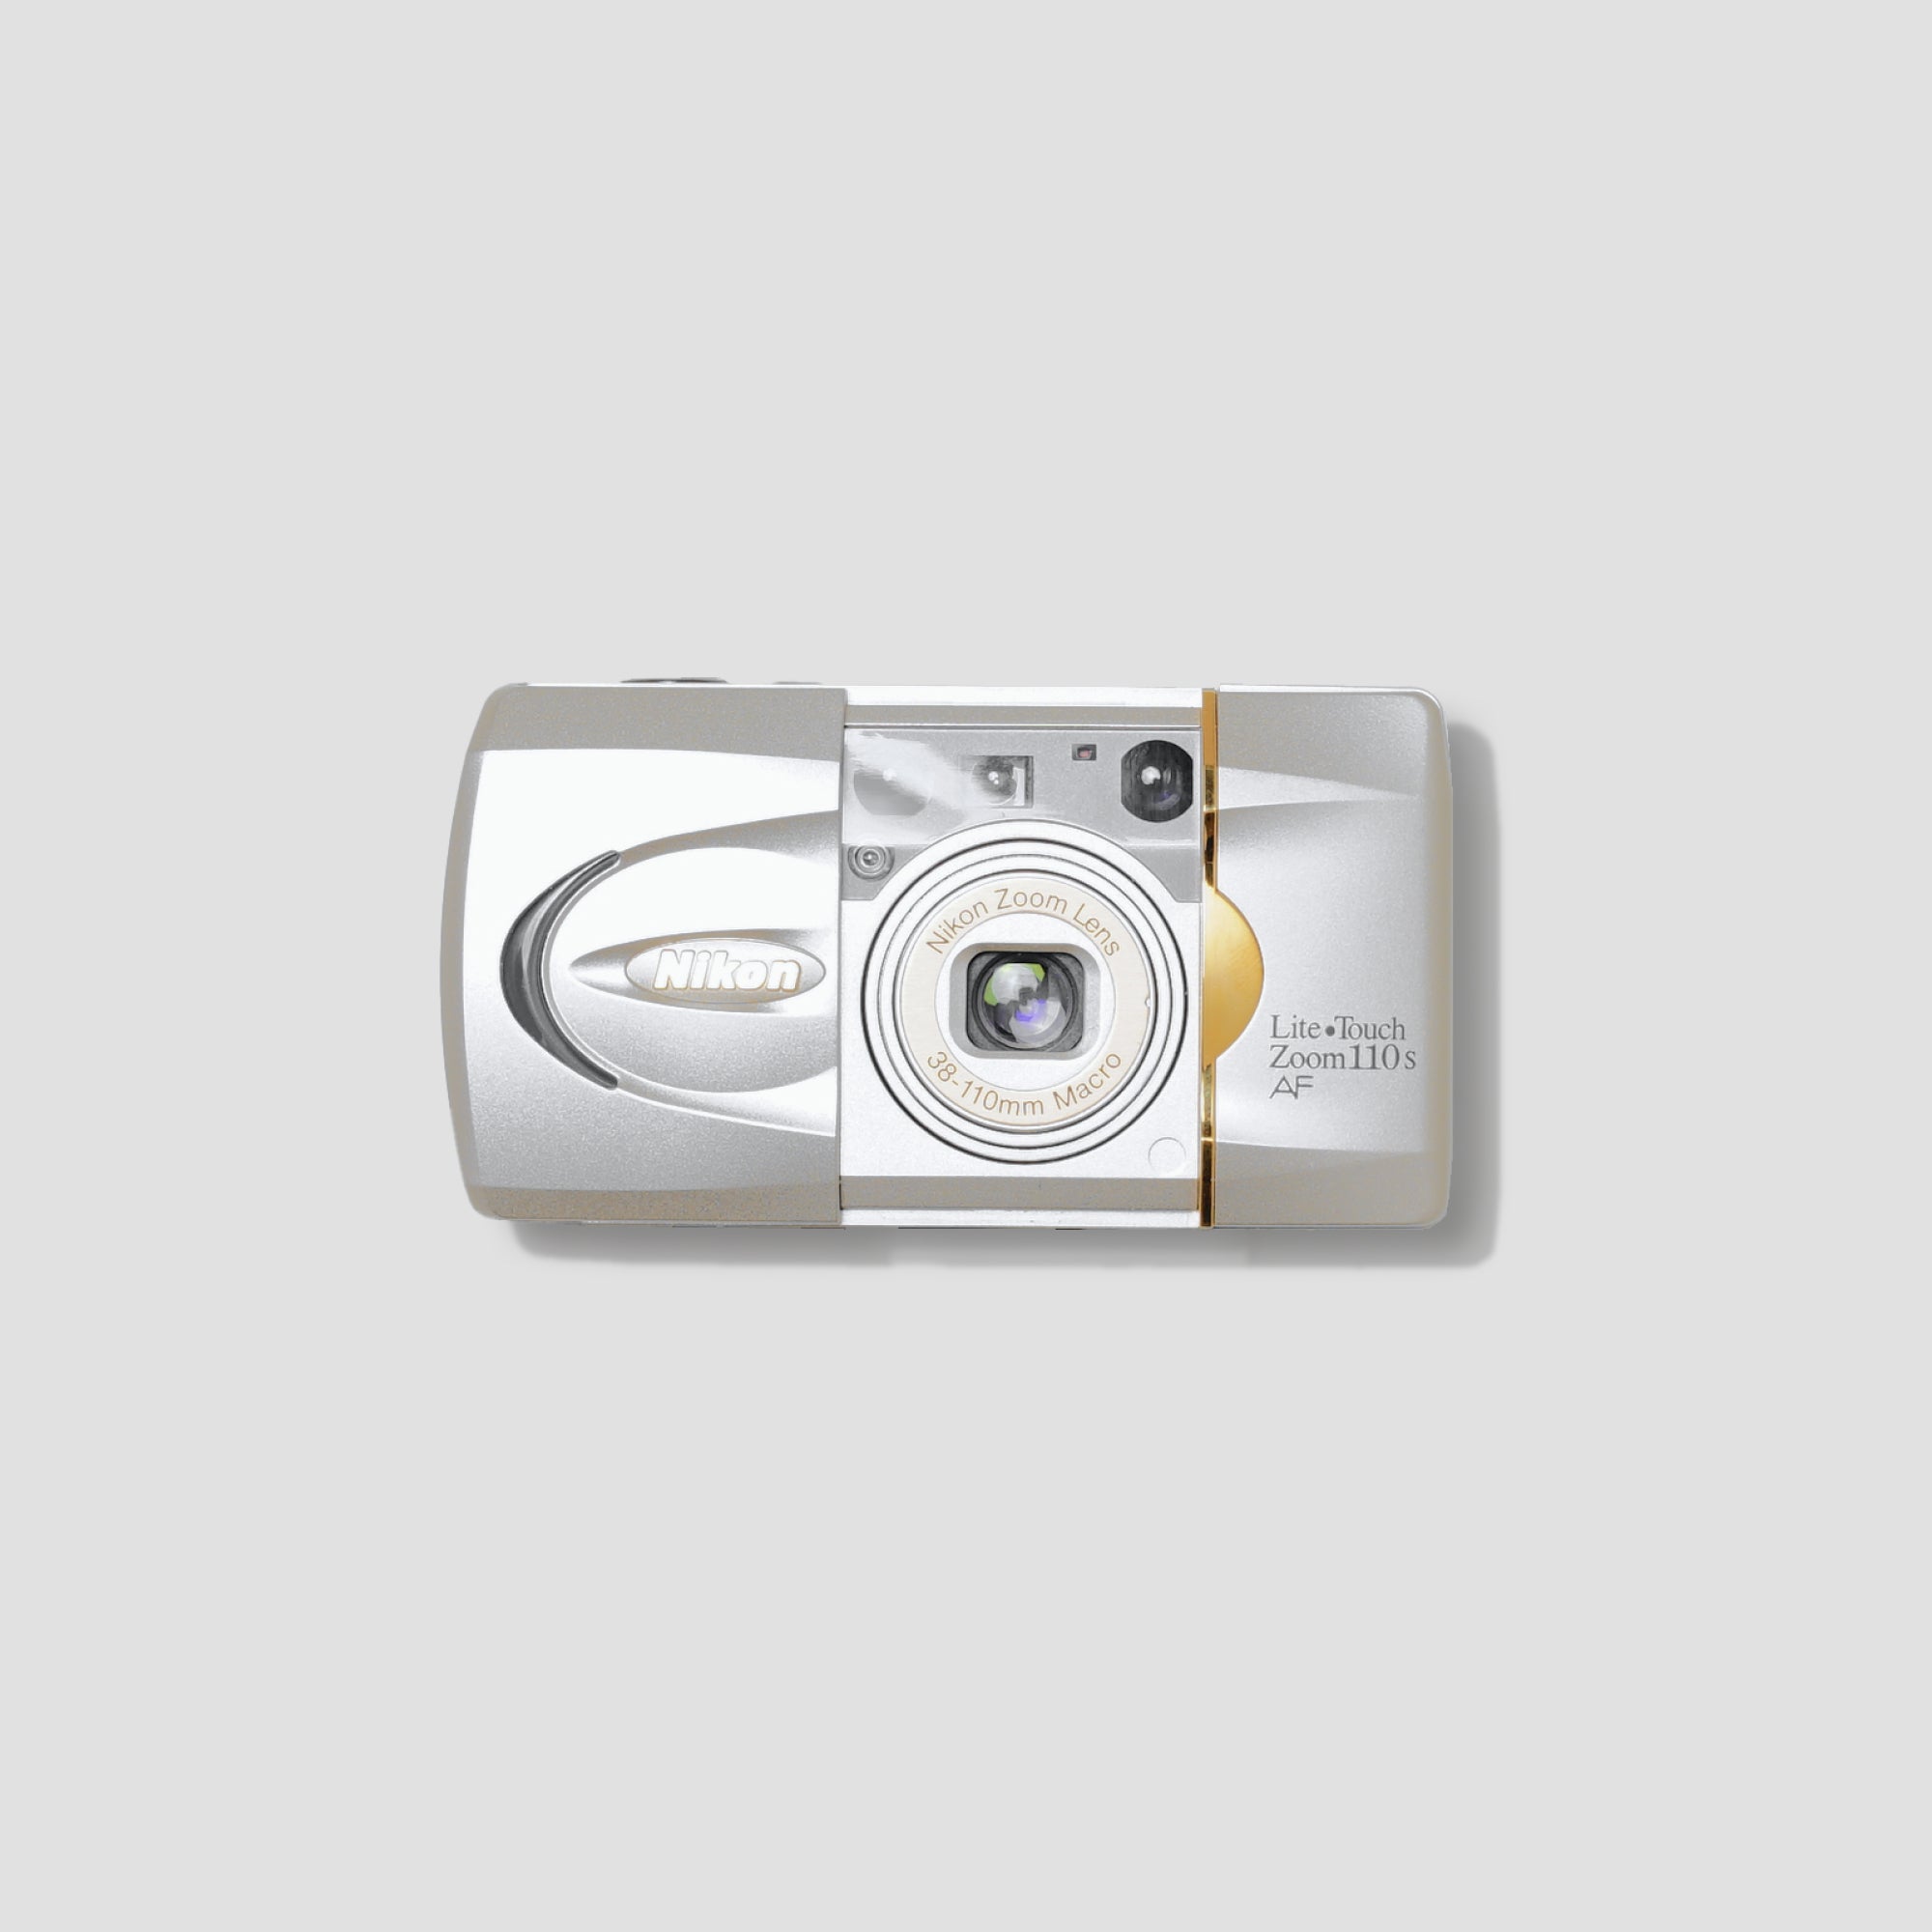 Nikon Lite Touch Zoom 110s